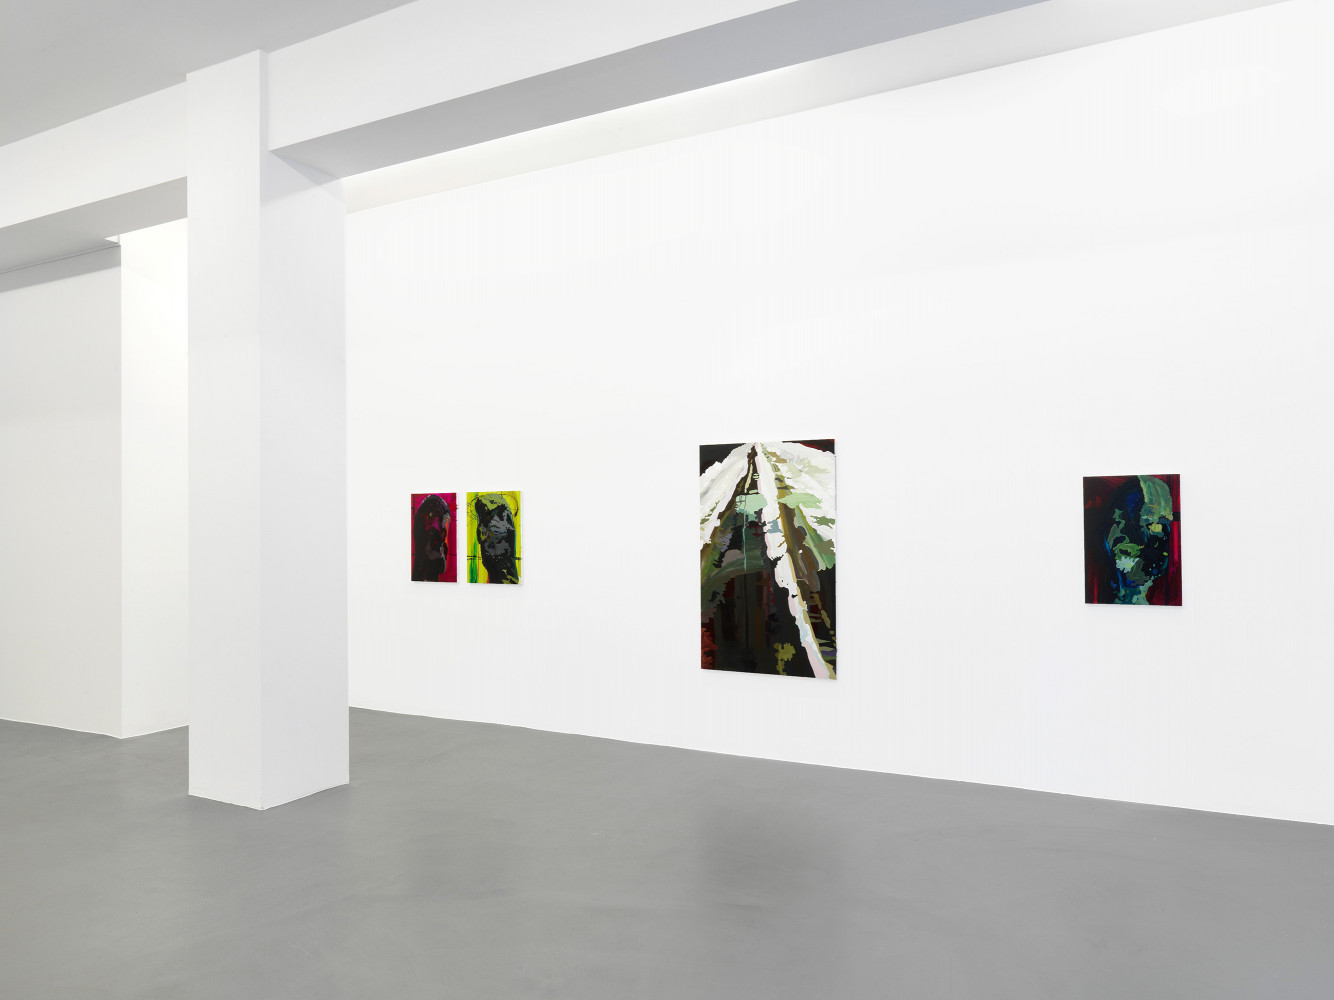 Clare Woods, Installation view, Buchmann Galerie, 2012